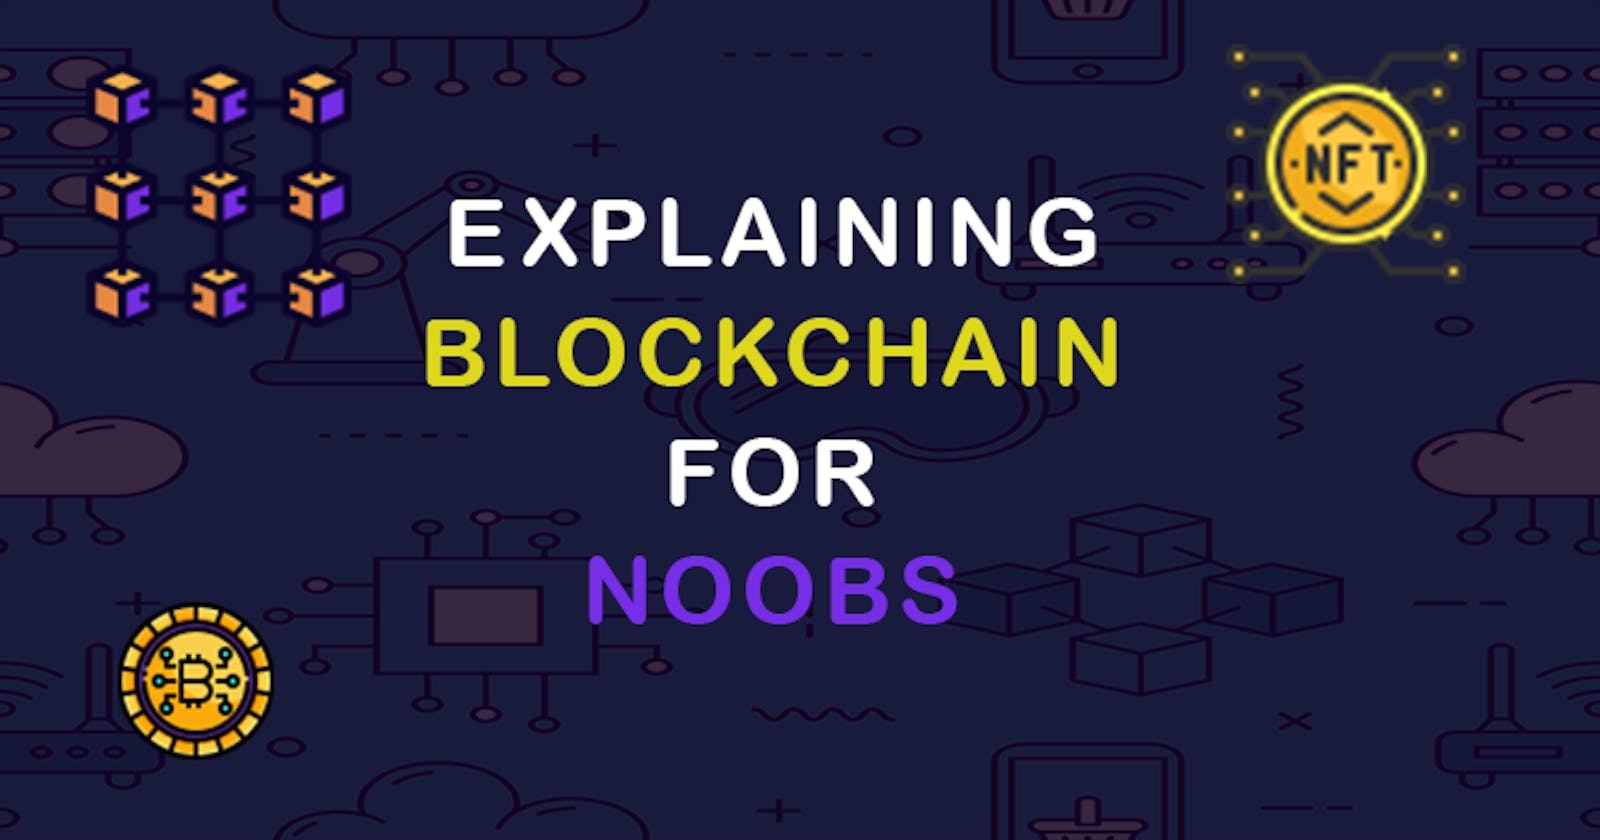 Explaining Blockchain In 4 Minutes